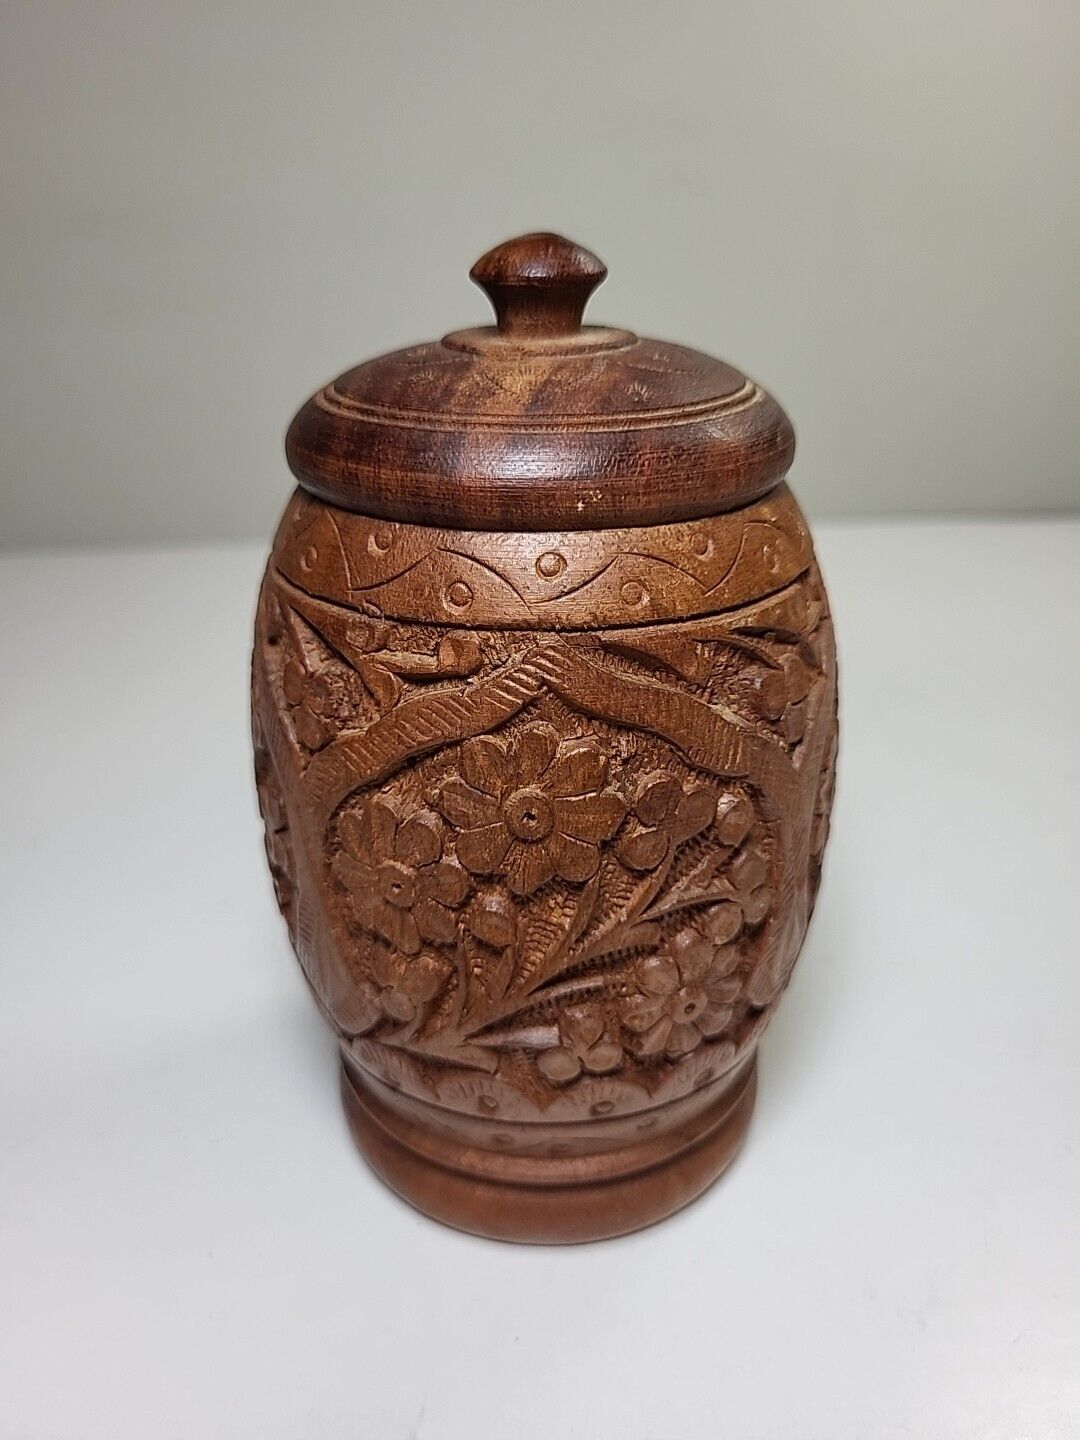 Vintage Hand Carved Wooden Jar Cup Flower Design 5.5”x3” India Spice Urn